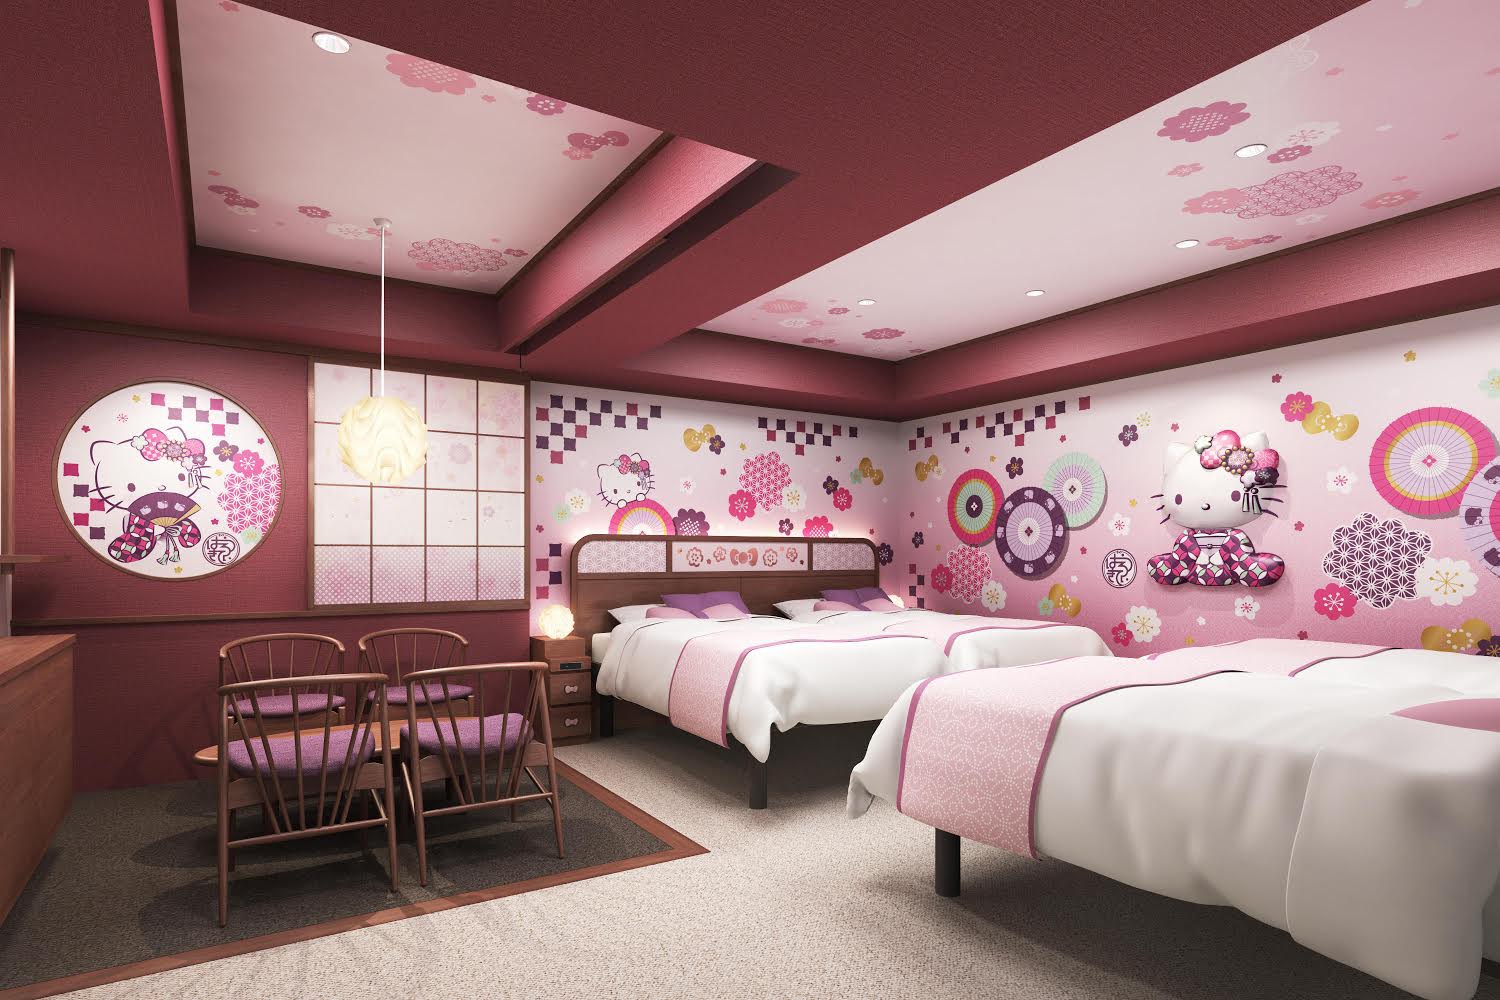 ハローキティルーム浅草東武ホテル Hello Kitty Room Tobu Hotel Asakusa 凱蒂貓旅館浅草